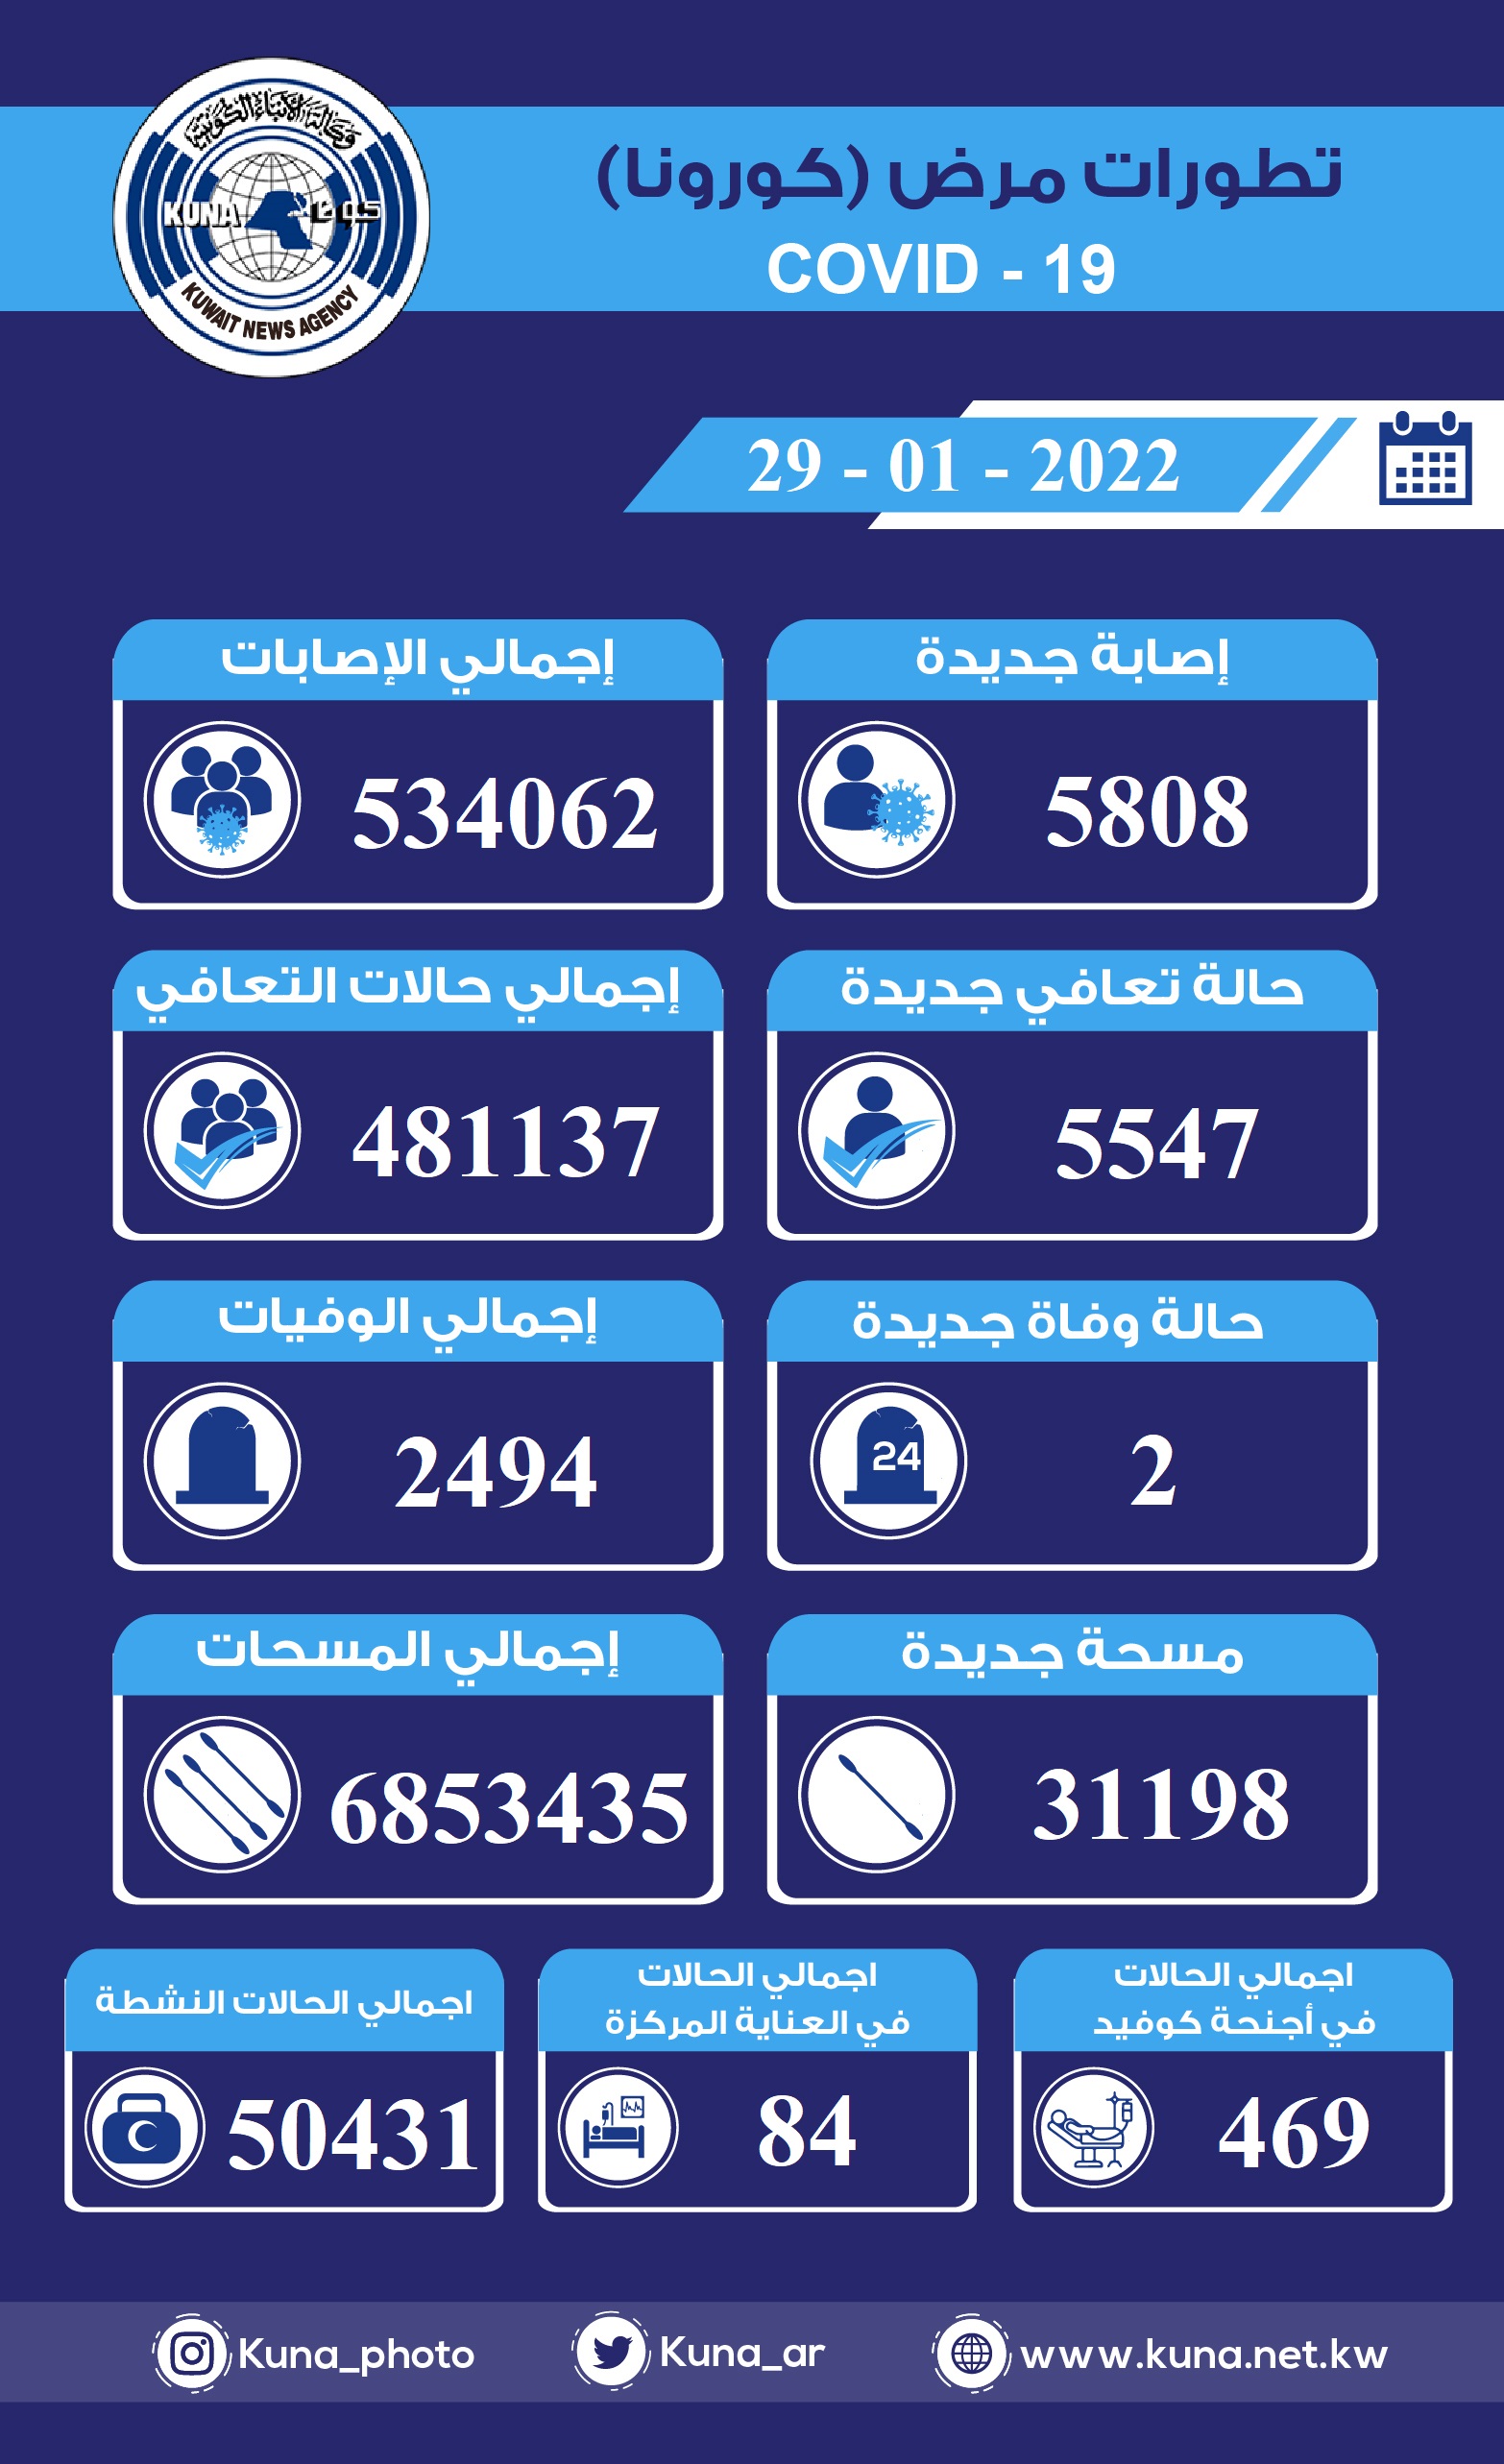 (الصحة) الكويتية: 5808 إصابات جديدة ب(كورونا) وشفاء 5547 وتسجيل حالتي وفاة خلال الساعات ال24 الماضية                                                                                                                                                      